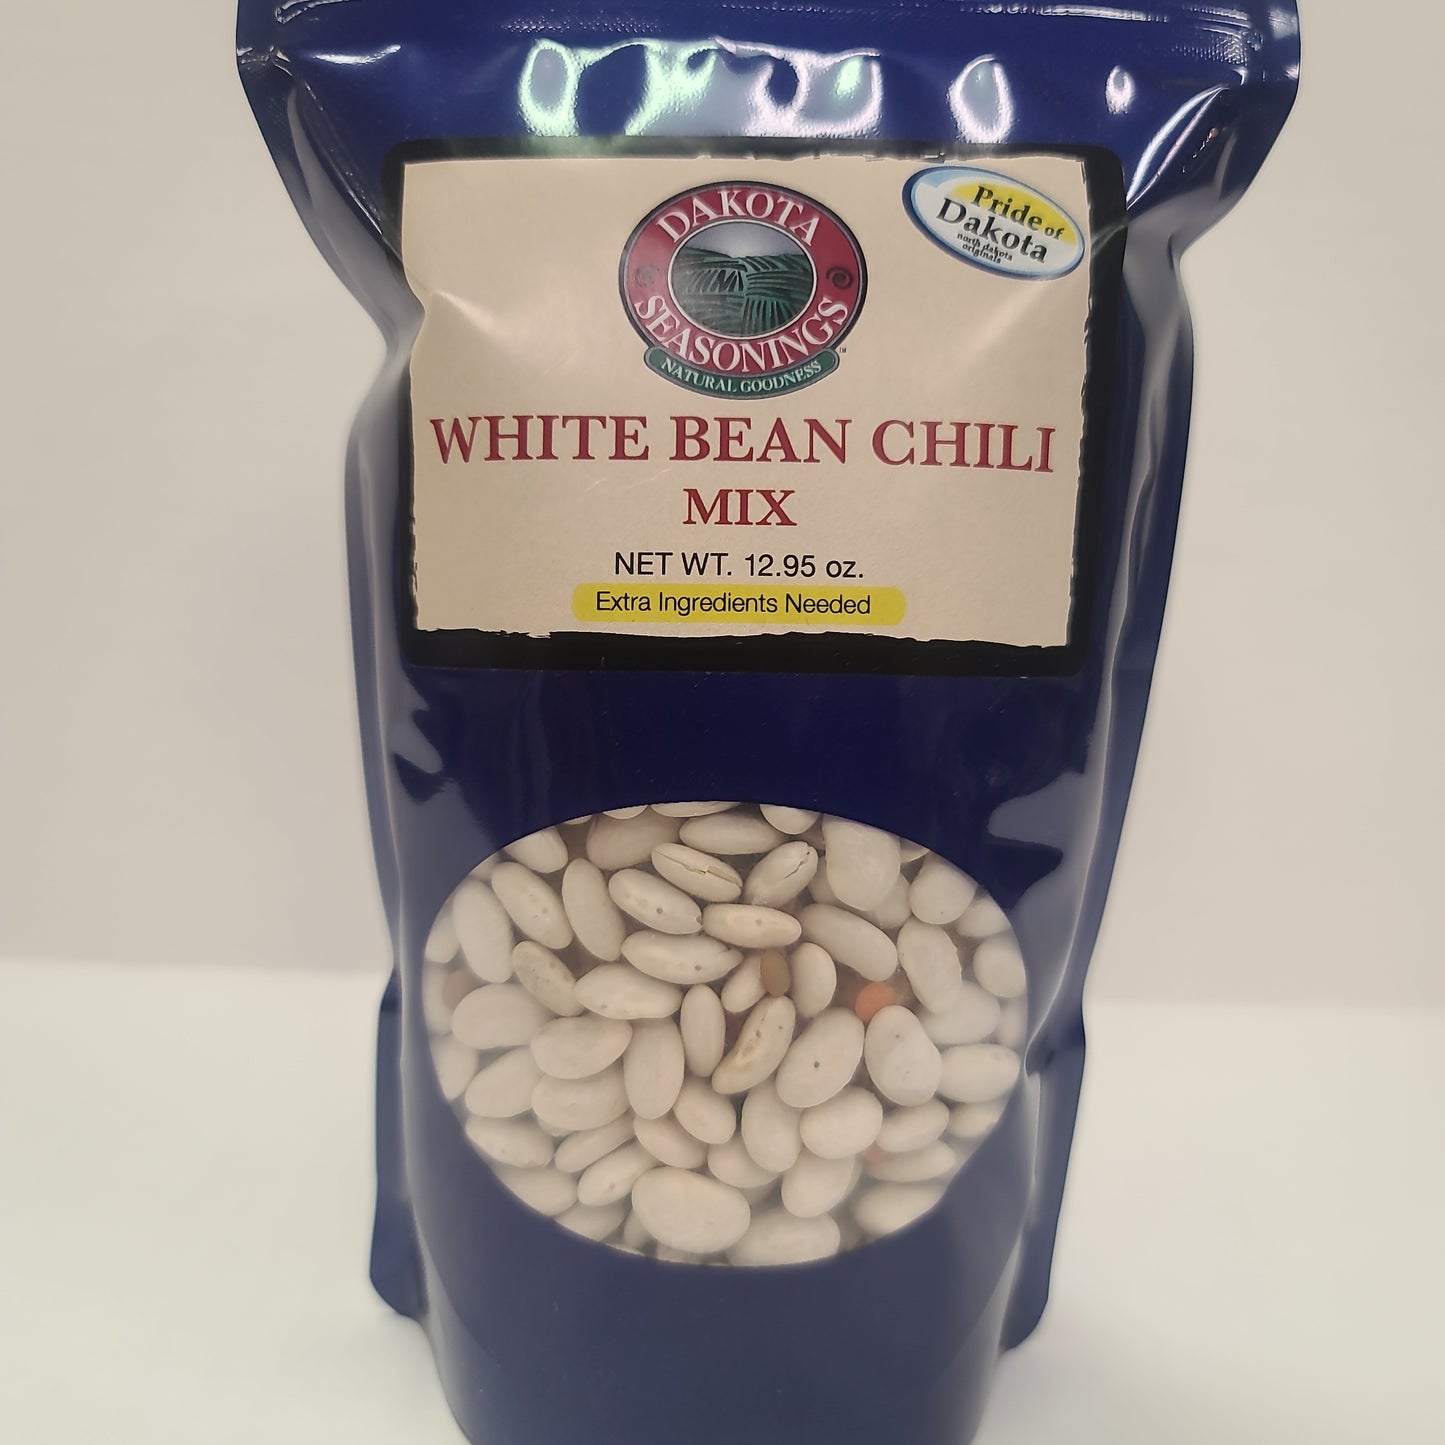 White Bean Chili mix